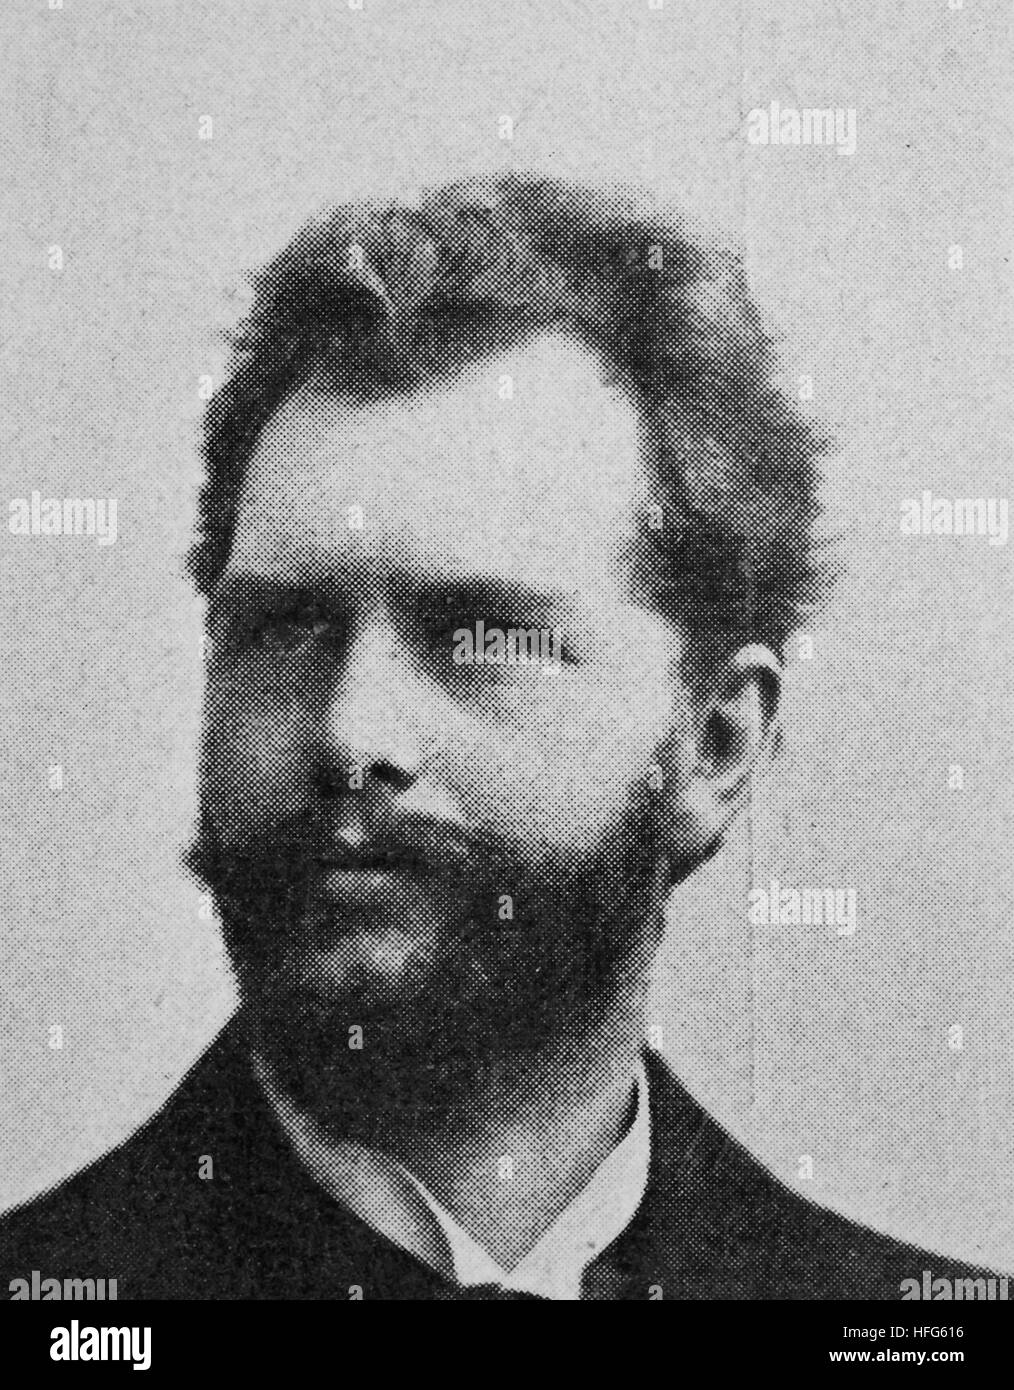 Wilhelm Reinhard Berger, 1861 - 1911, était un compositeur, pianiste et chef d'orchestre., reproduction photo de l'année 1895, l'amélioration numérique Banque D'Images